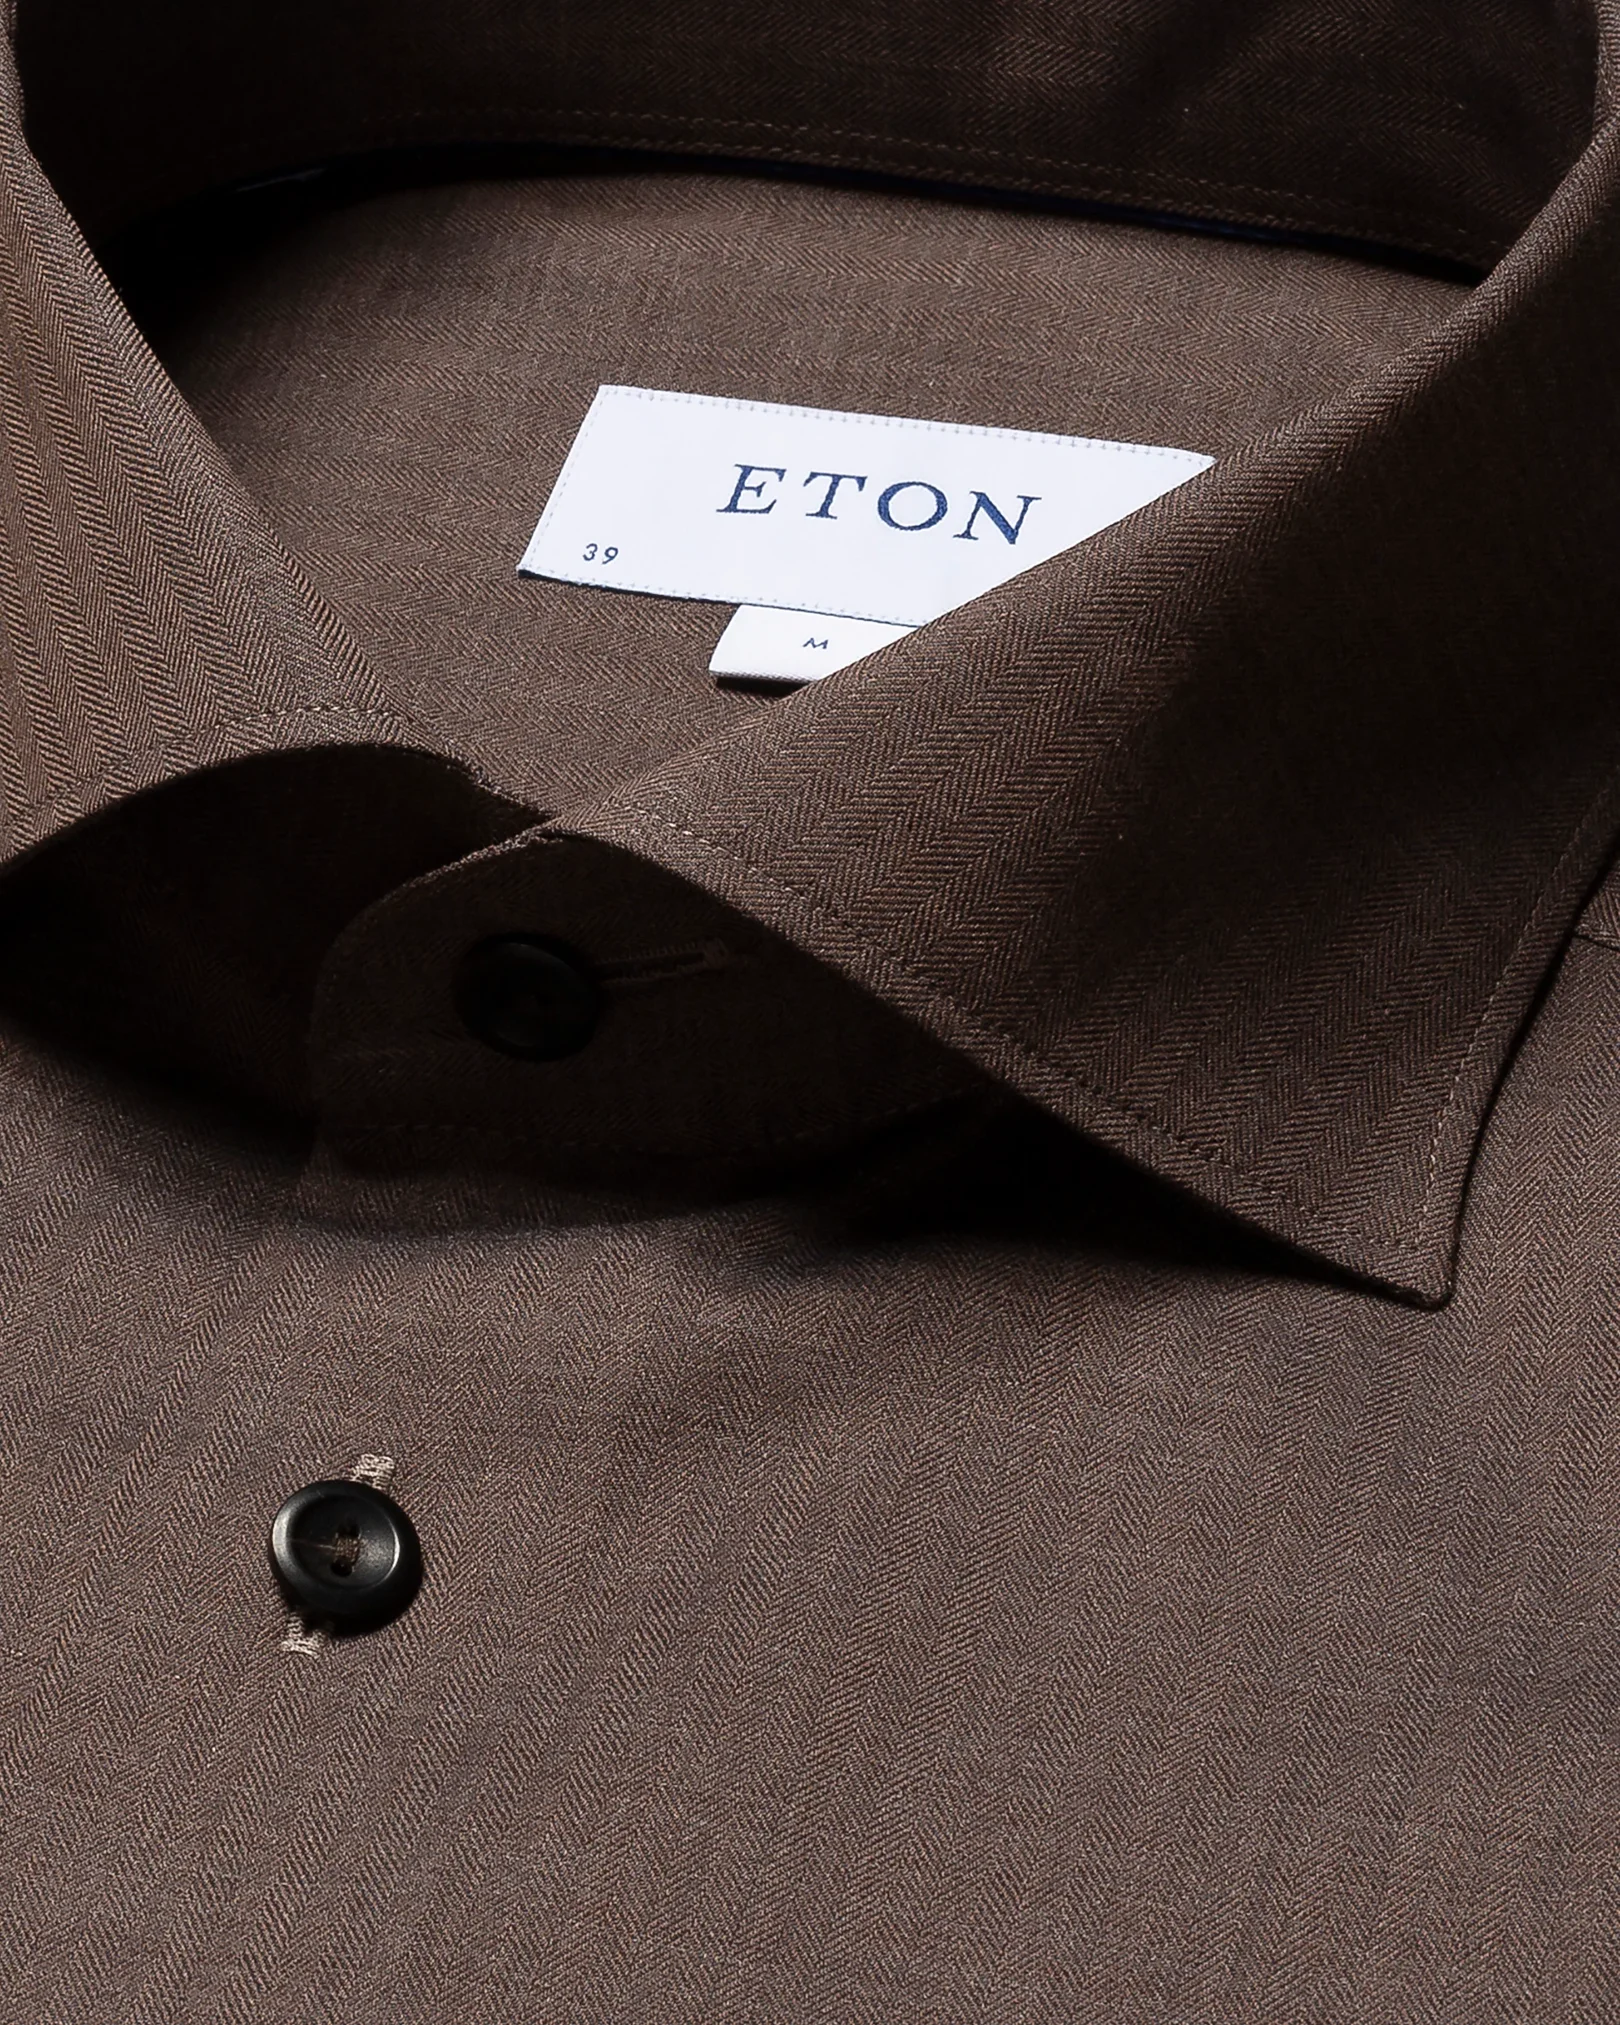 Eton - dark brown flannel